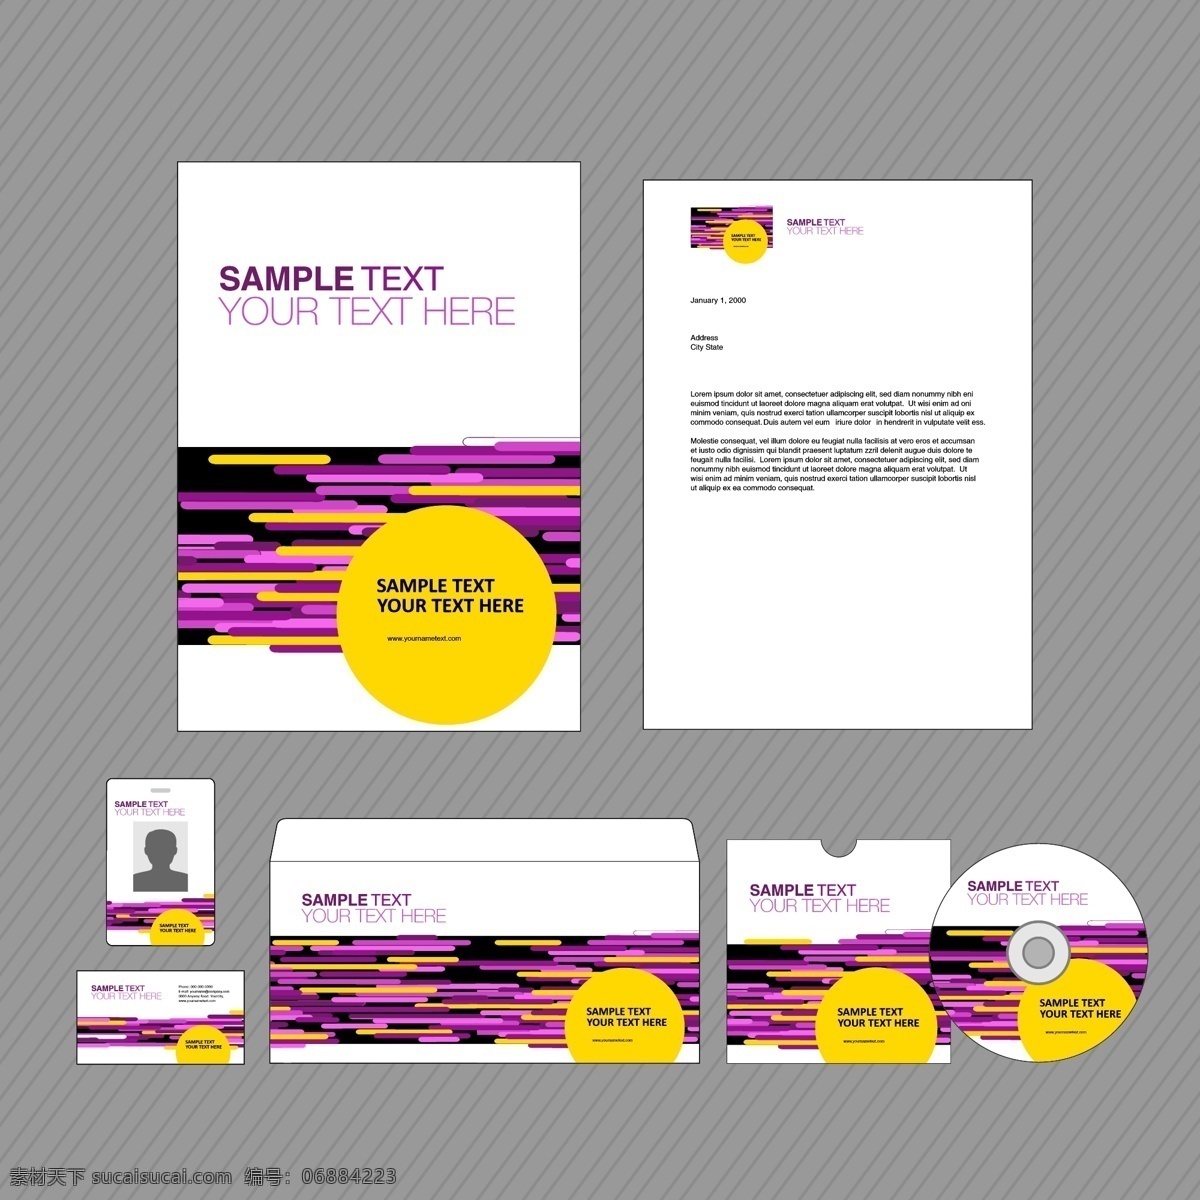 紫色 时尚 图案 vi 系统 紫色时尚图案 cd光盘 名片 信封 信笺 vi系统 视觉系统 vi模板 识别系统 折页传单 矢量素材 白色